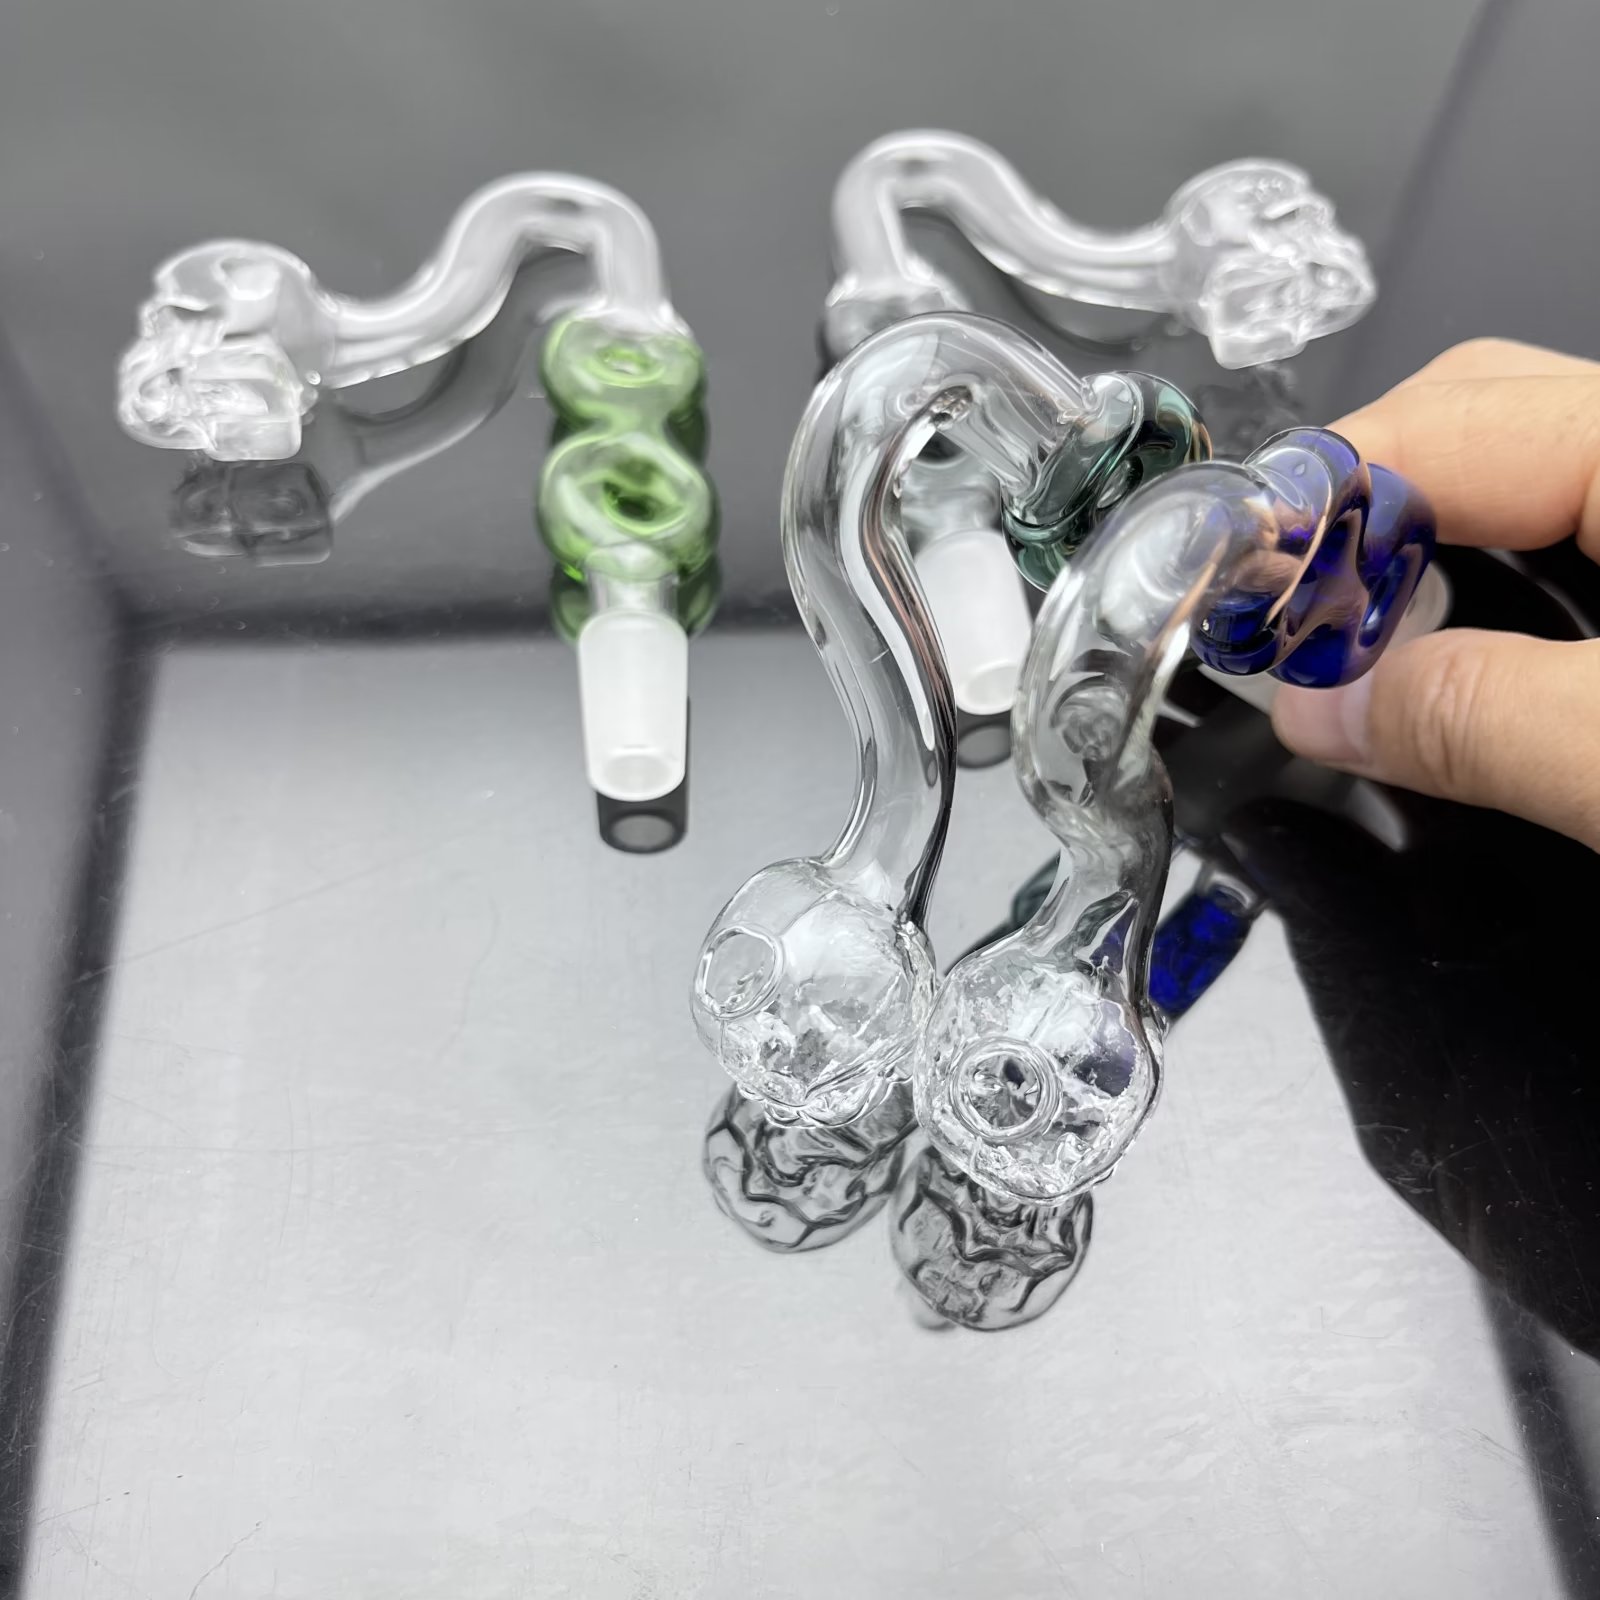 Glazen pijpen roken fabricage handgeblazen waterpijp nieuw 8-vormig skelet skelet sigaretten set fornuisaccessoires 14 mm